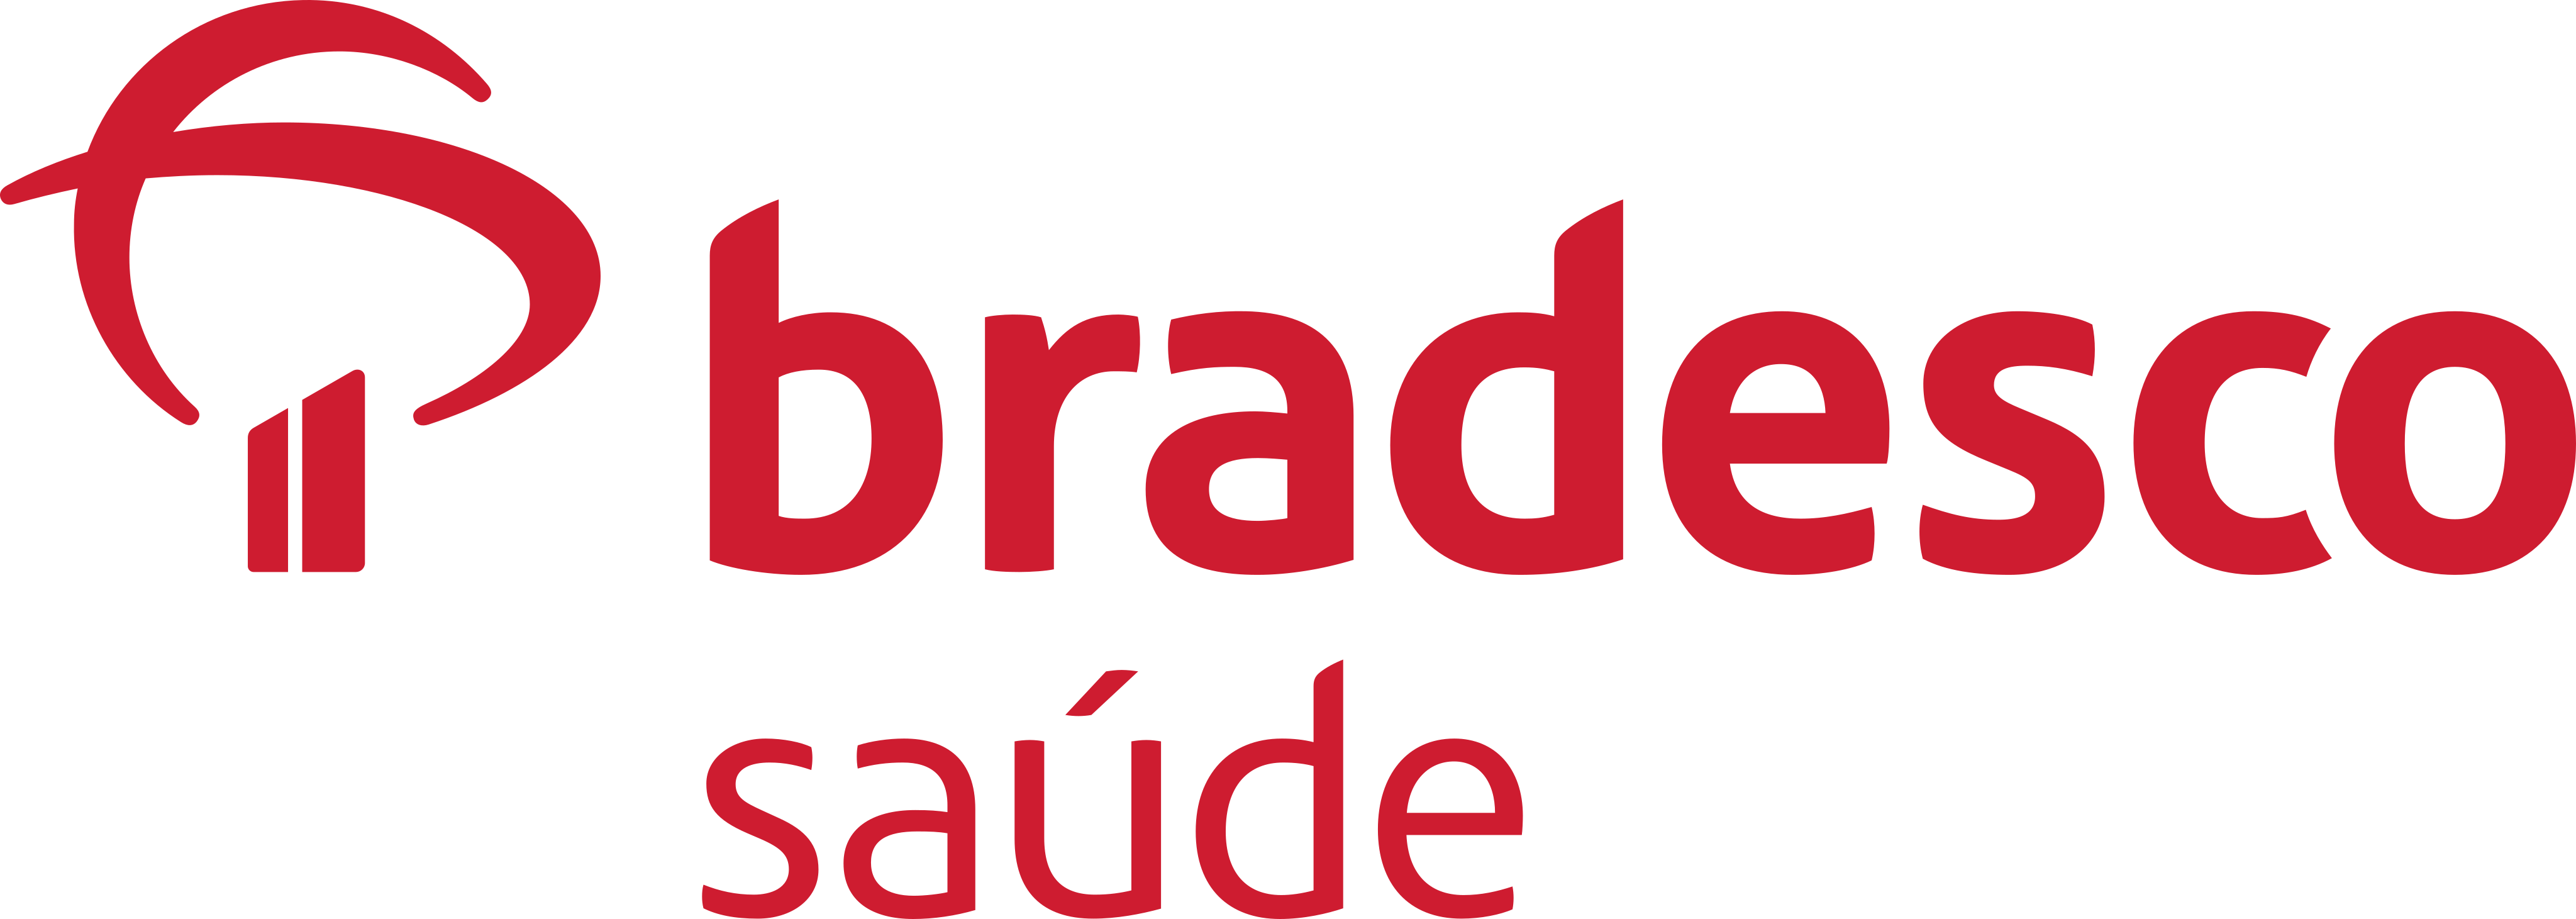 bradesco-saude-logo-1-1.png